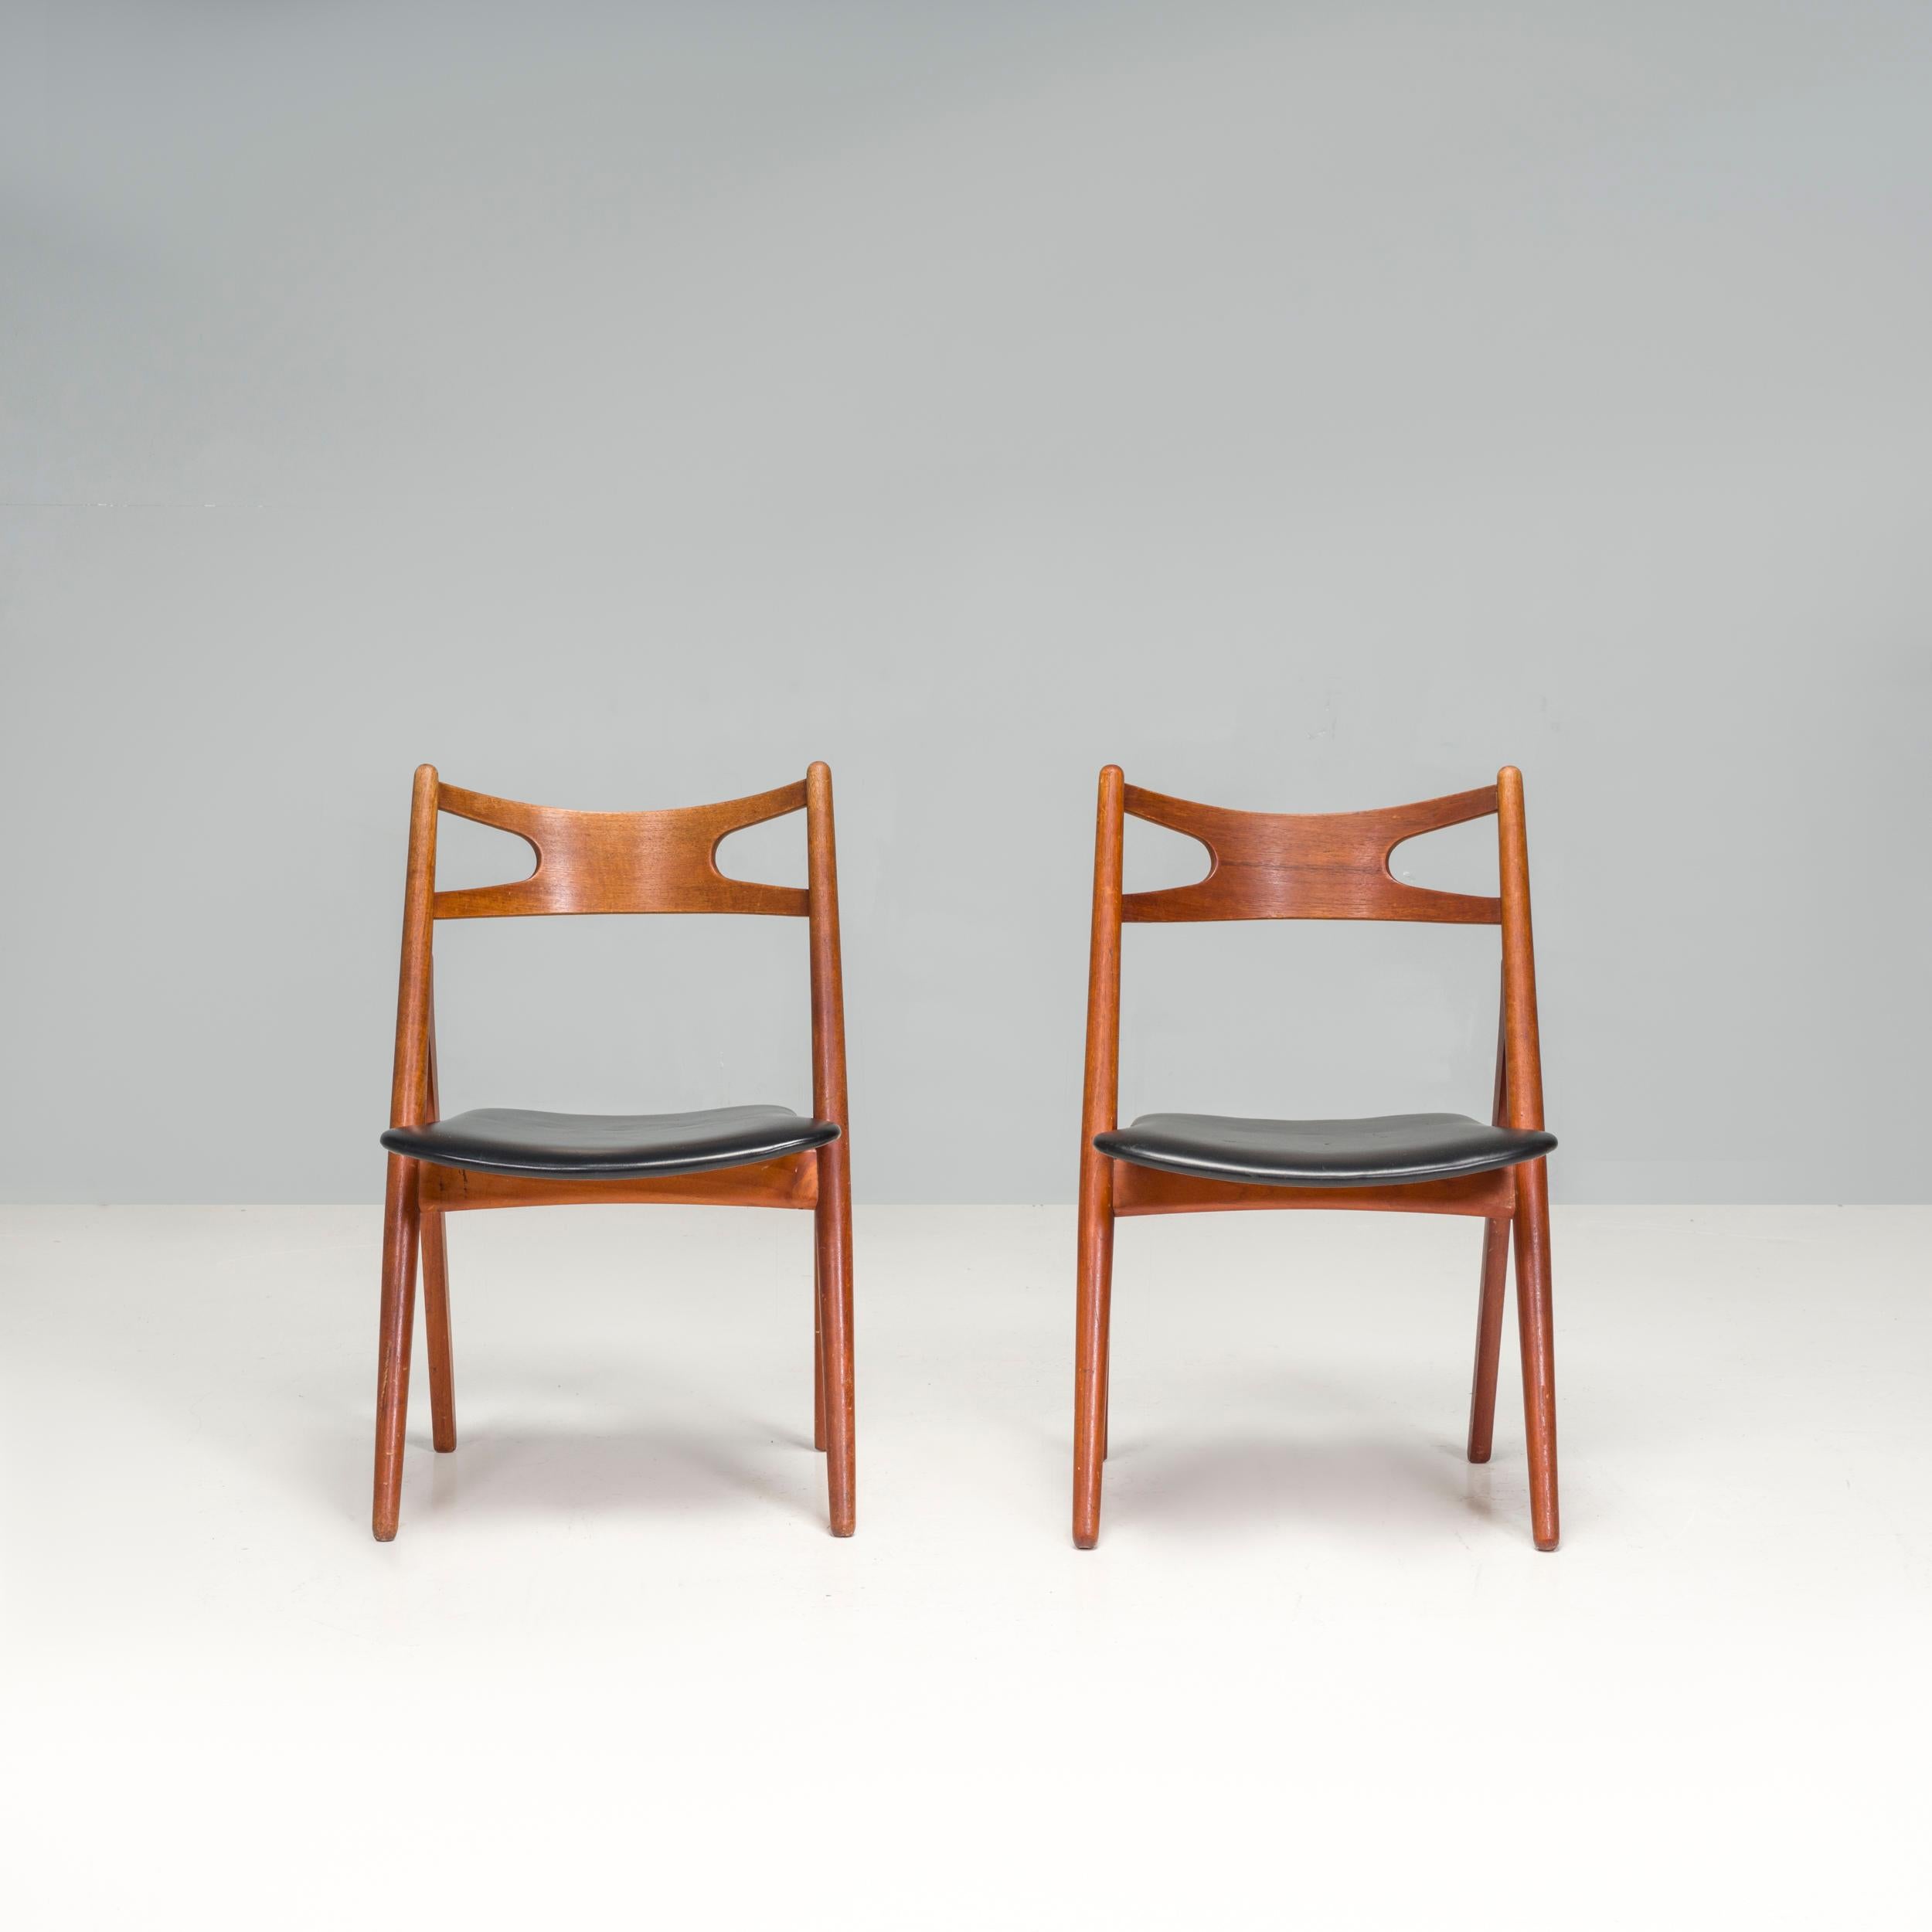 Der 1952 von Hans J. Wegner entworfene CH29P Sawbuck Chair wurde bis in die 1970er Jahre von Carl Hansen & Son hergestellt und 20 Jahre später wieder neu aufgelegt.

Inspiriert von den Sägeböcken und Sägepferden, die von Zimmerleuten verwendet